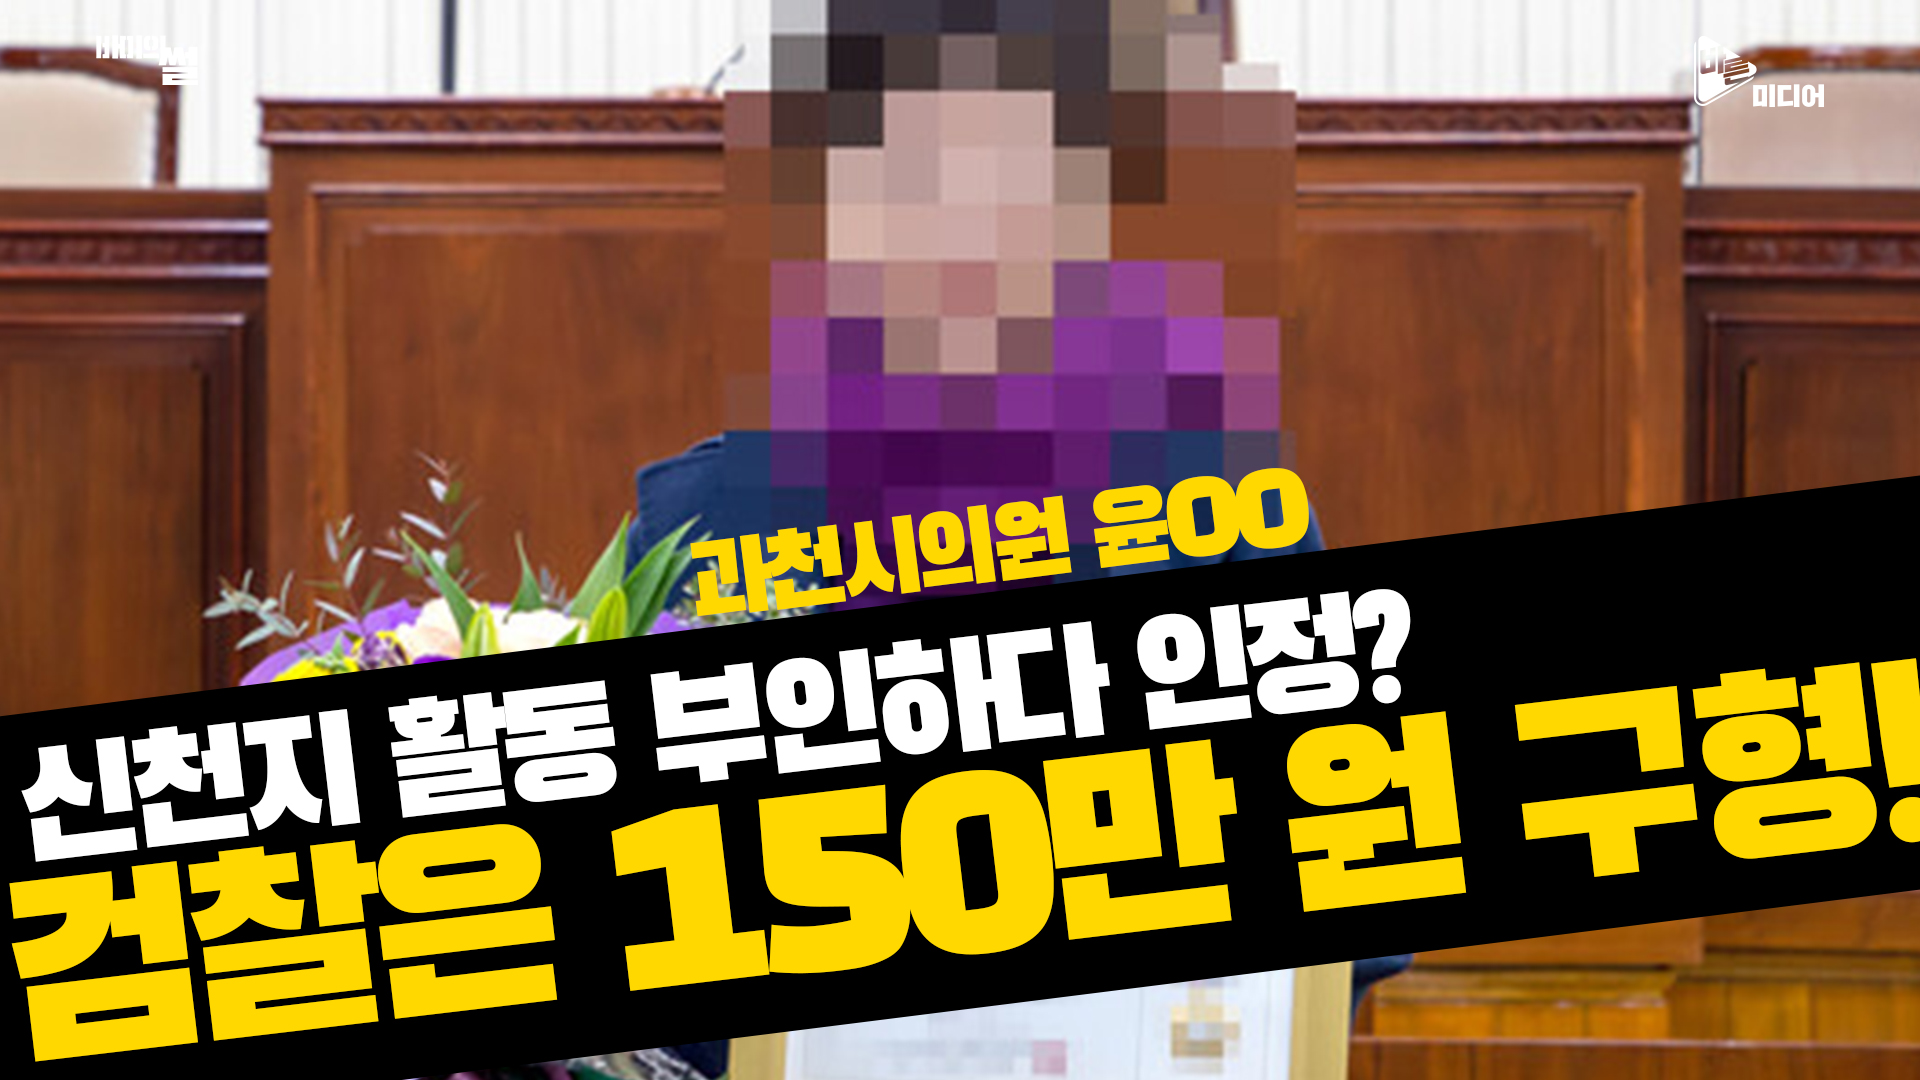 과천시의원 윤OO, 신천지 활동 부인하다 인정? 검찰은 150만 원 구형!